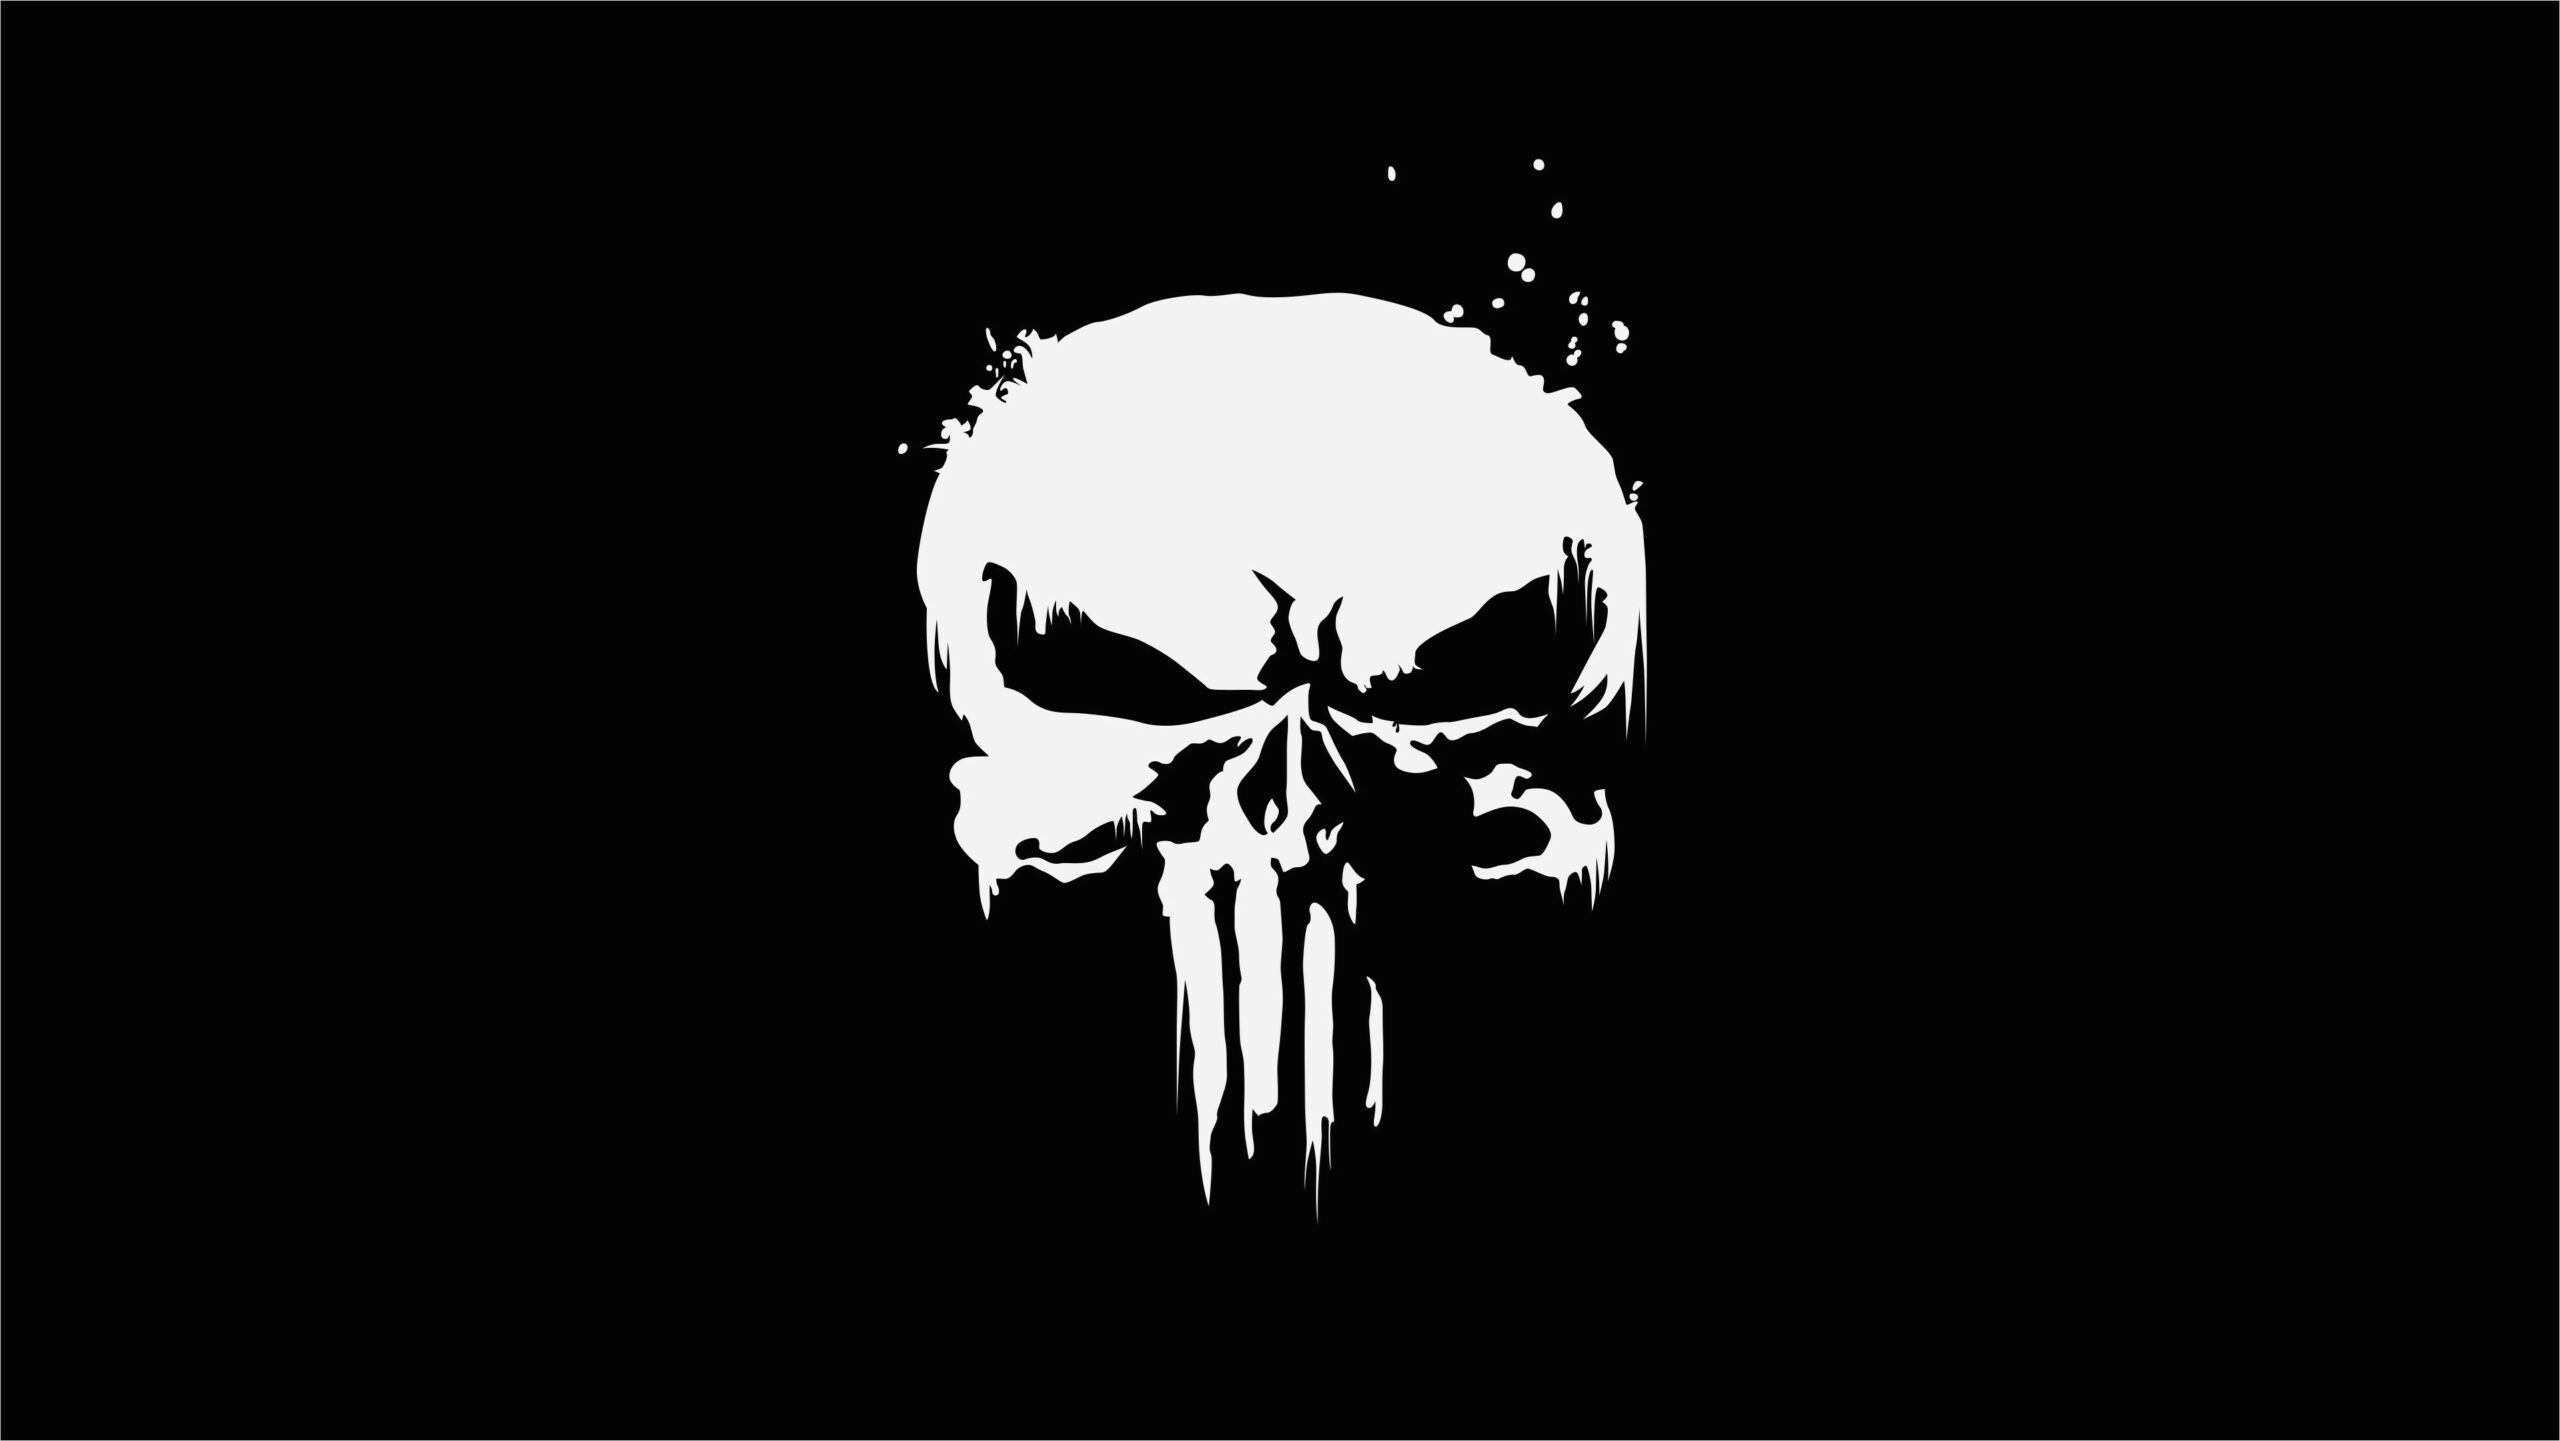 4k Skull Wallpaper For Mobile. Skull wallpaper, Digital wallpaper, Punisher logo